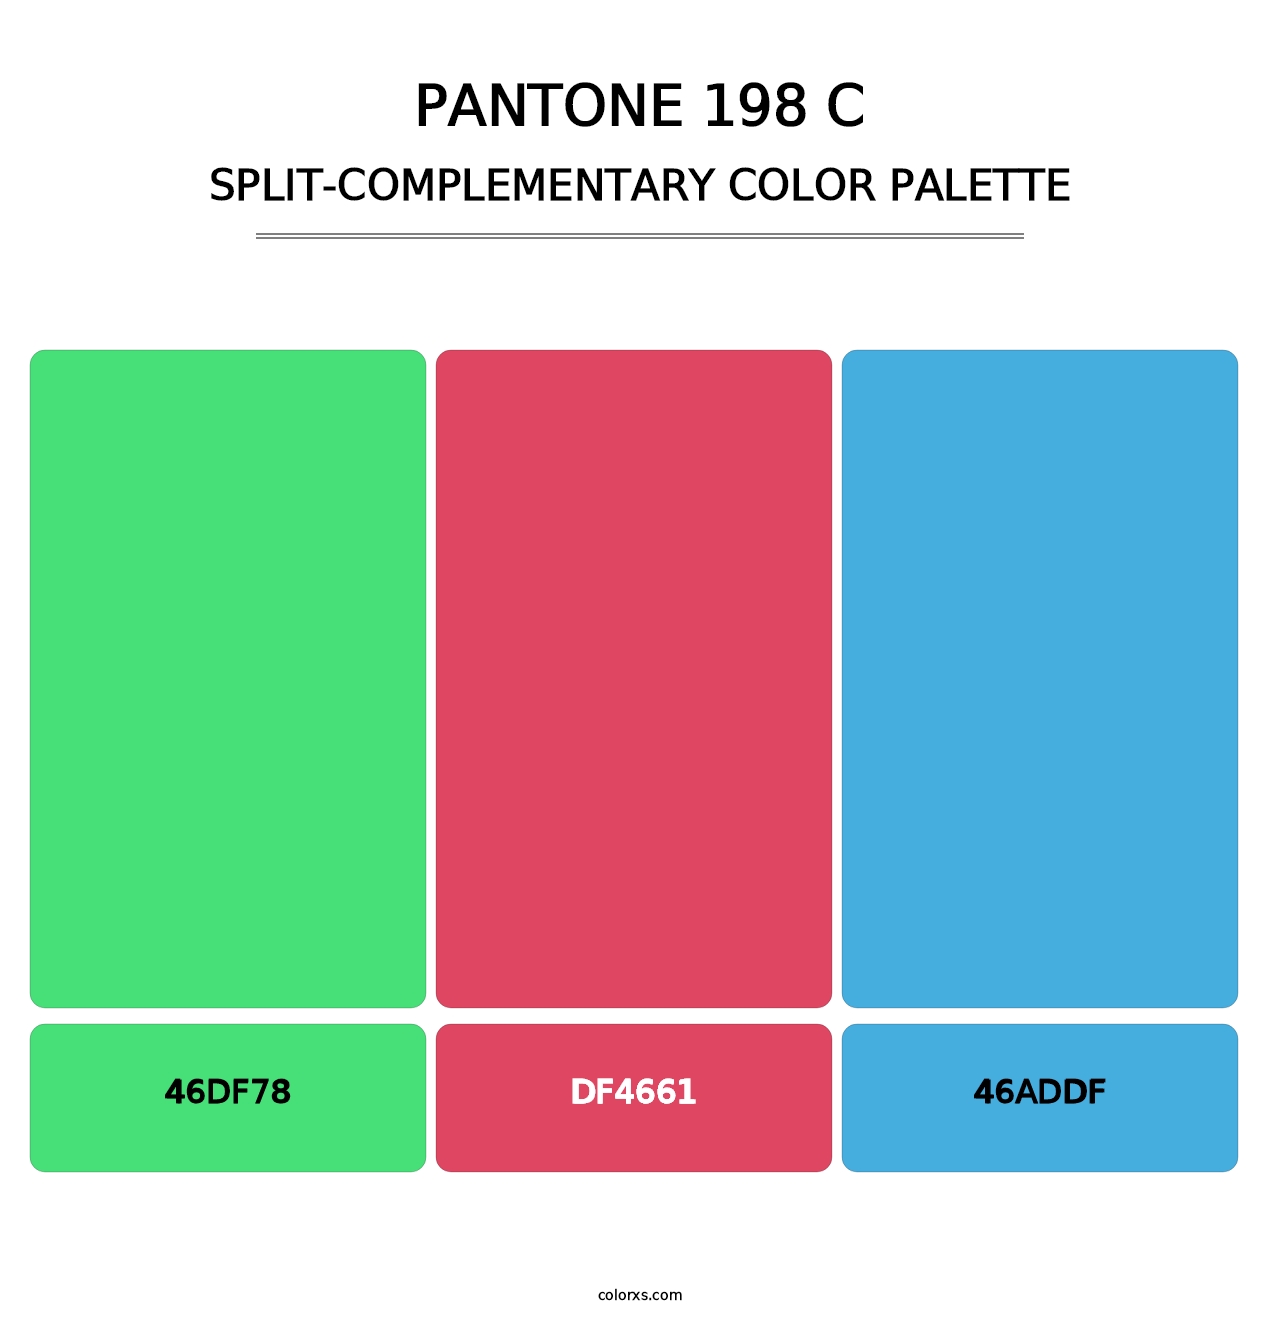 PANTONE 198 C - Split-Complementary Color Palette